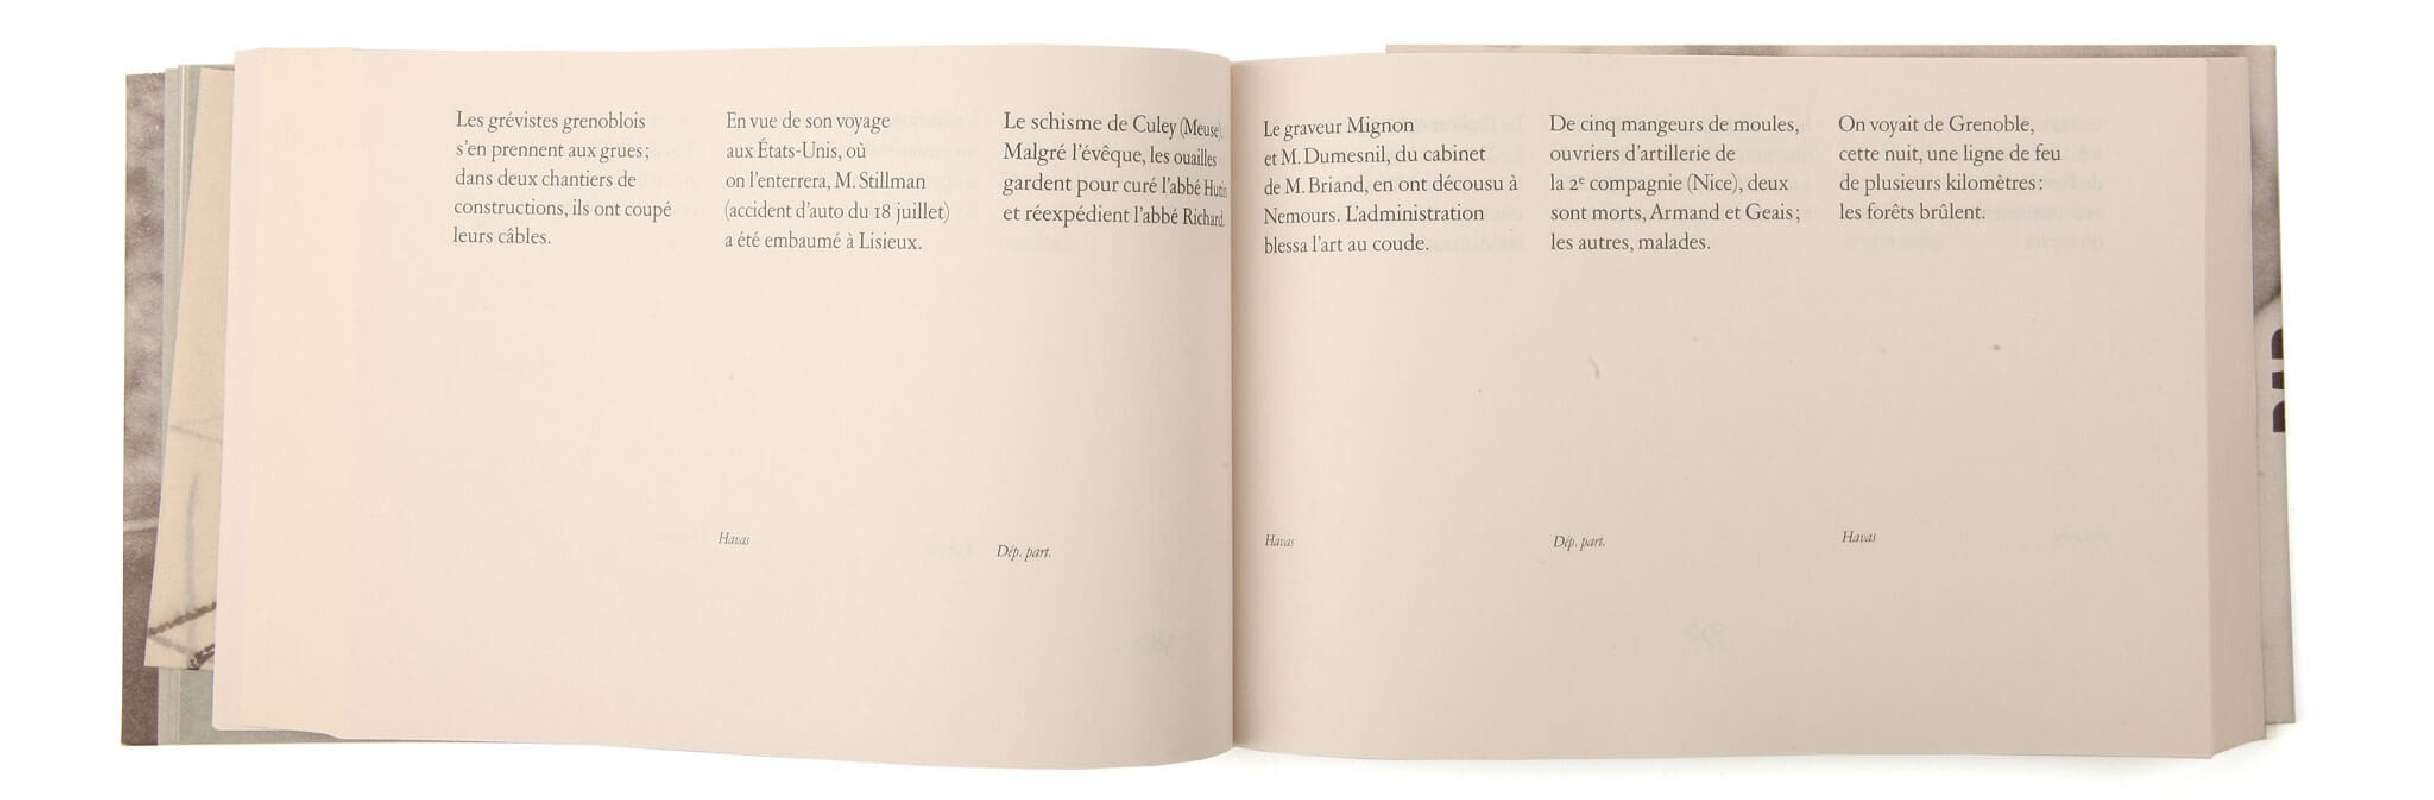 Félix Fénéon Nouvelles en trois lignes Éditions cent pages page intérieure faits divers composition SP Millot